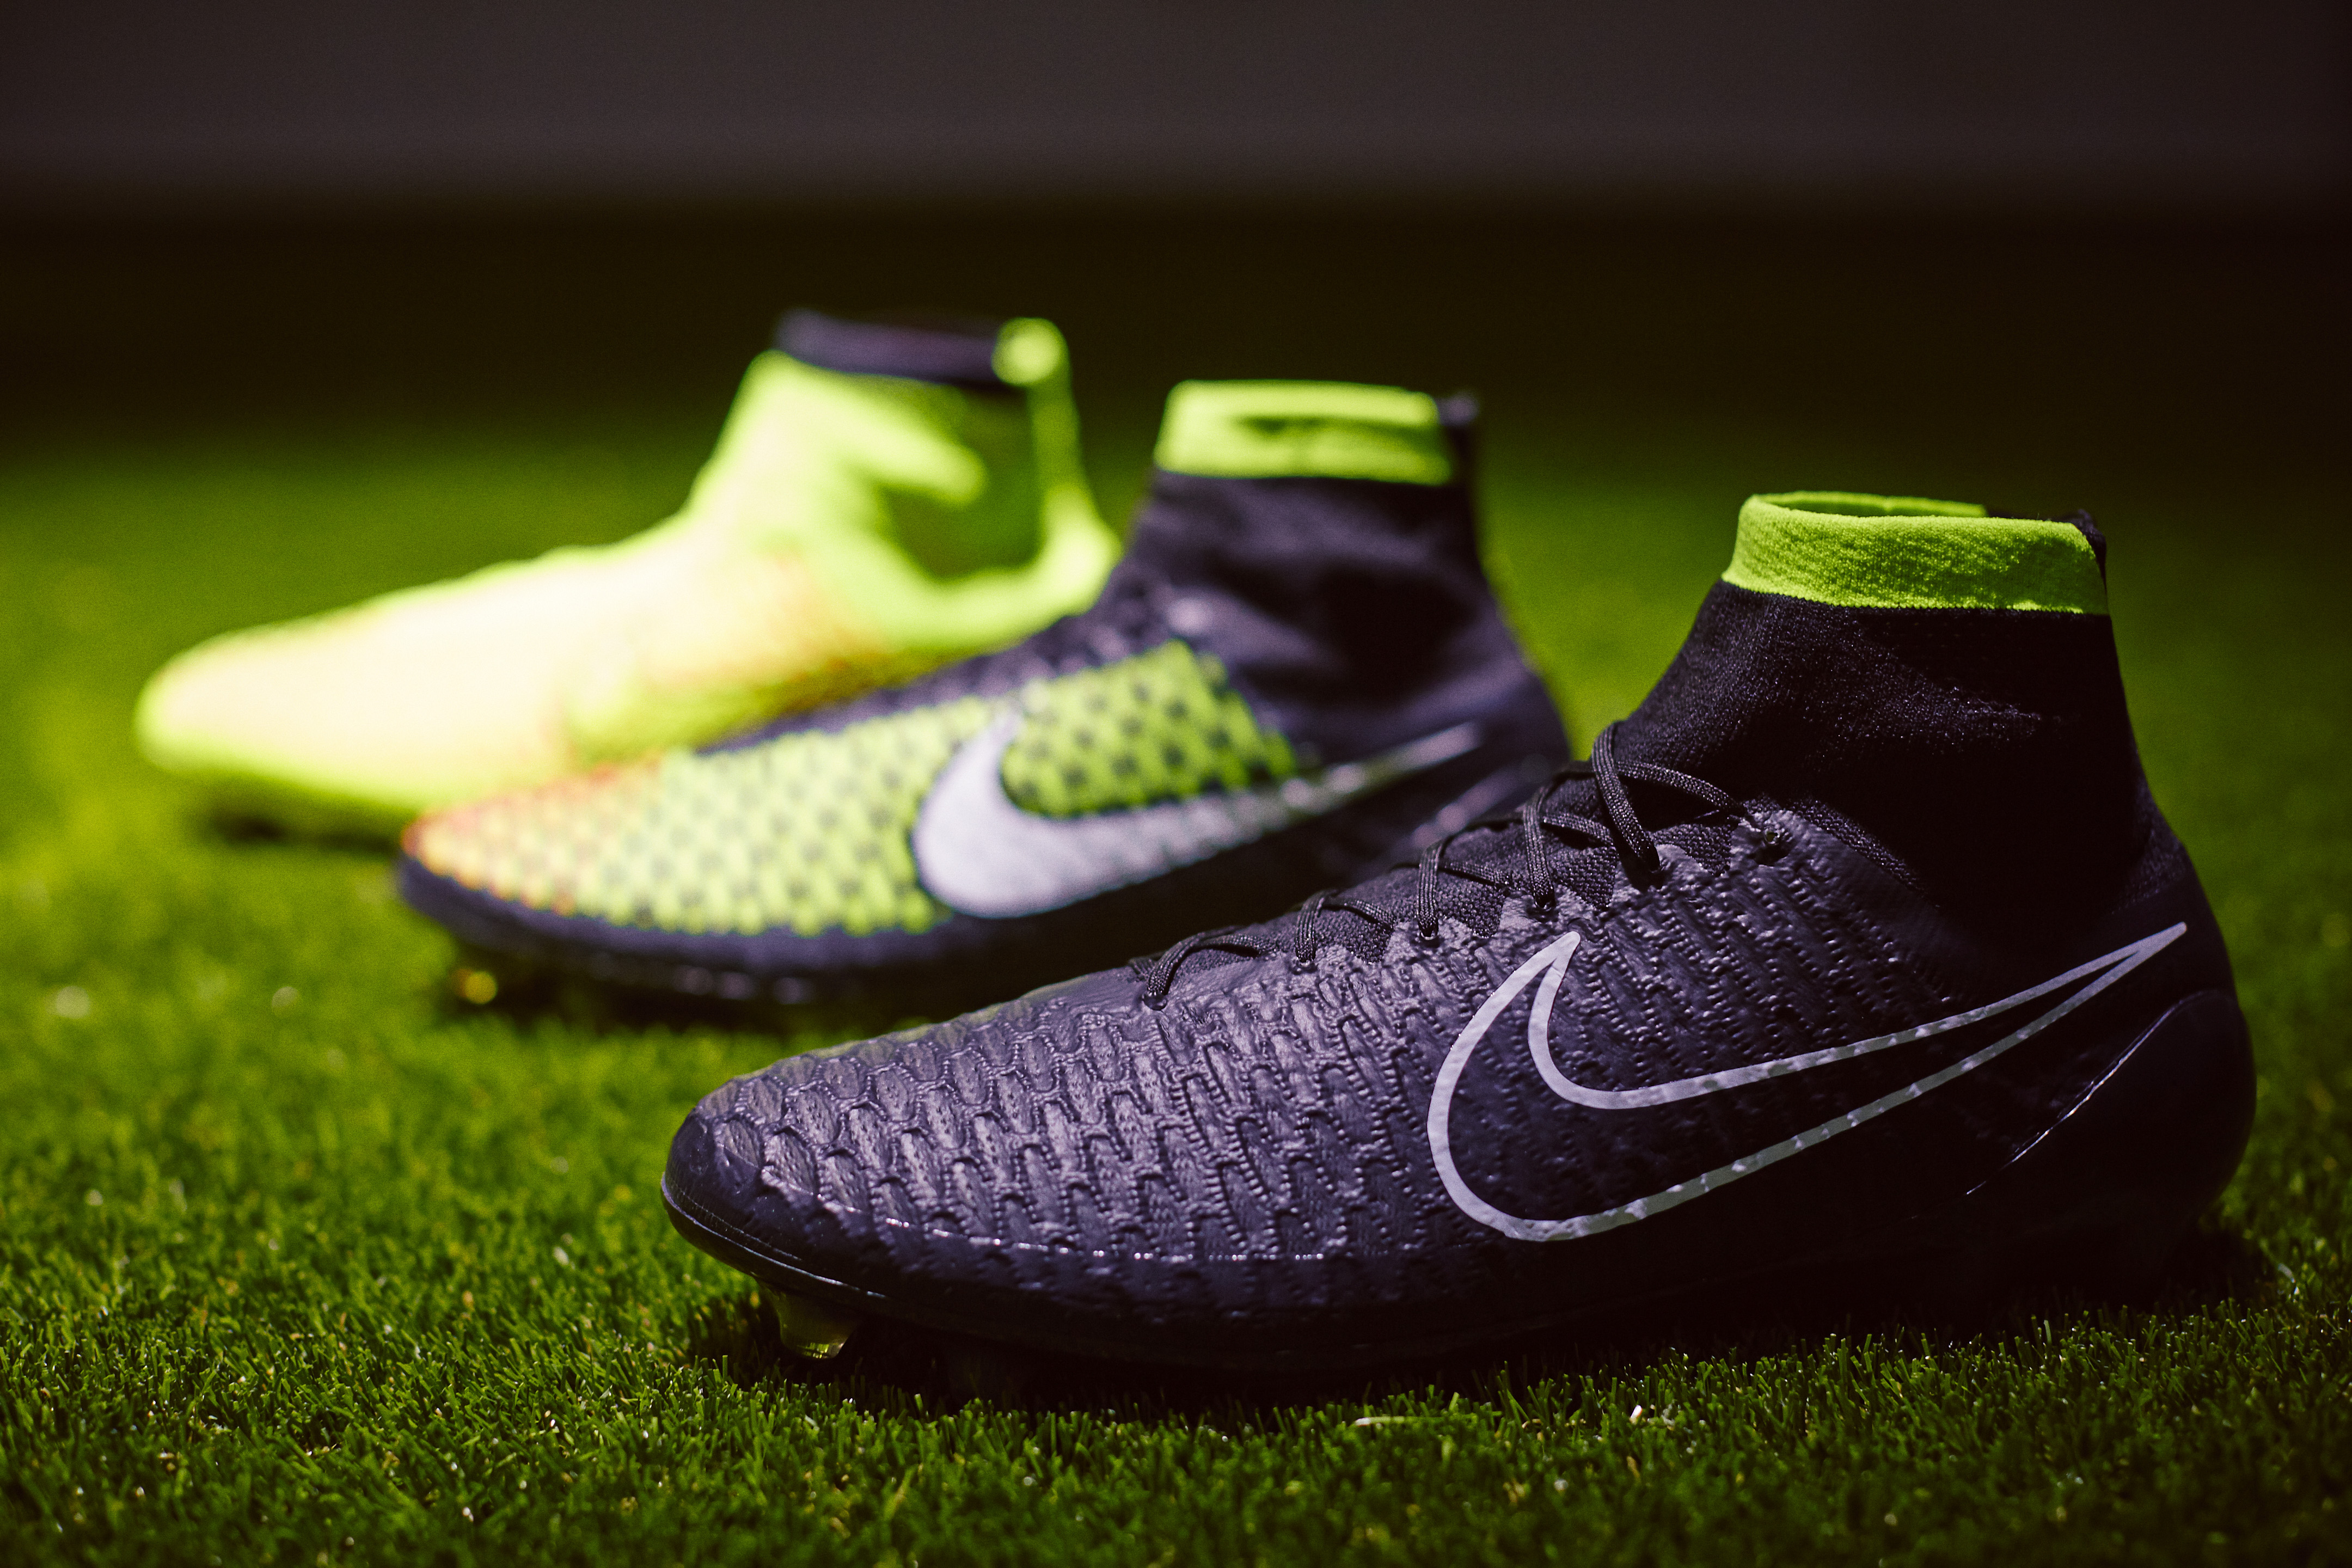 Nike Magista - Los nuevos tacos de Nike que buscan revolucionar el fútbol -  Snob